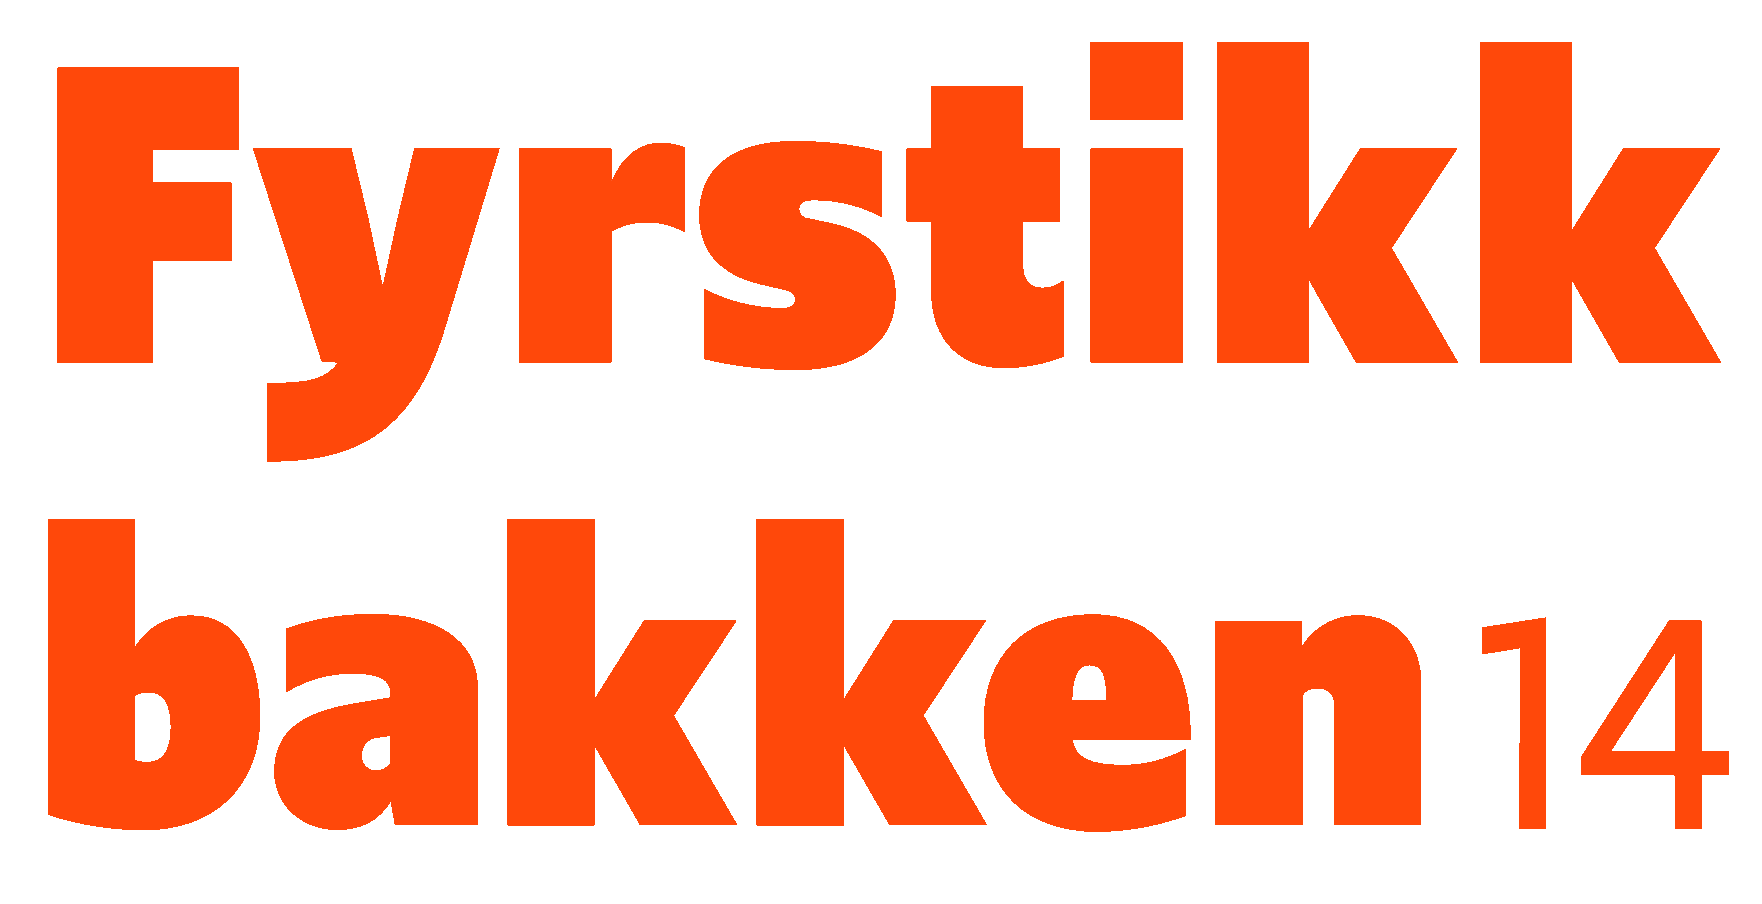 The logo for Fyrstikkbakken 14.